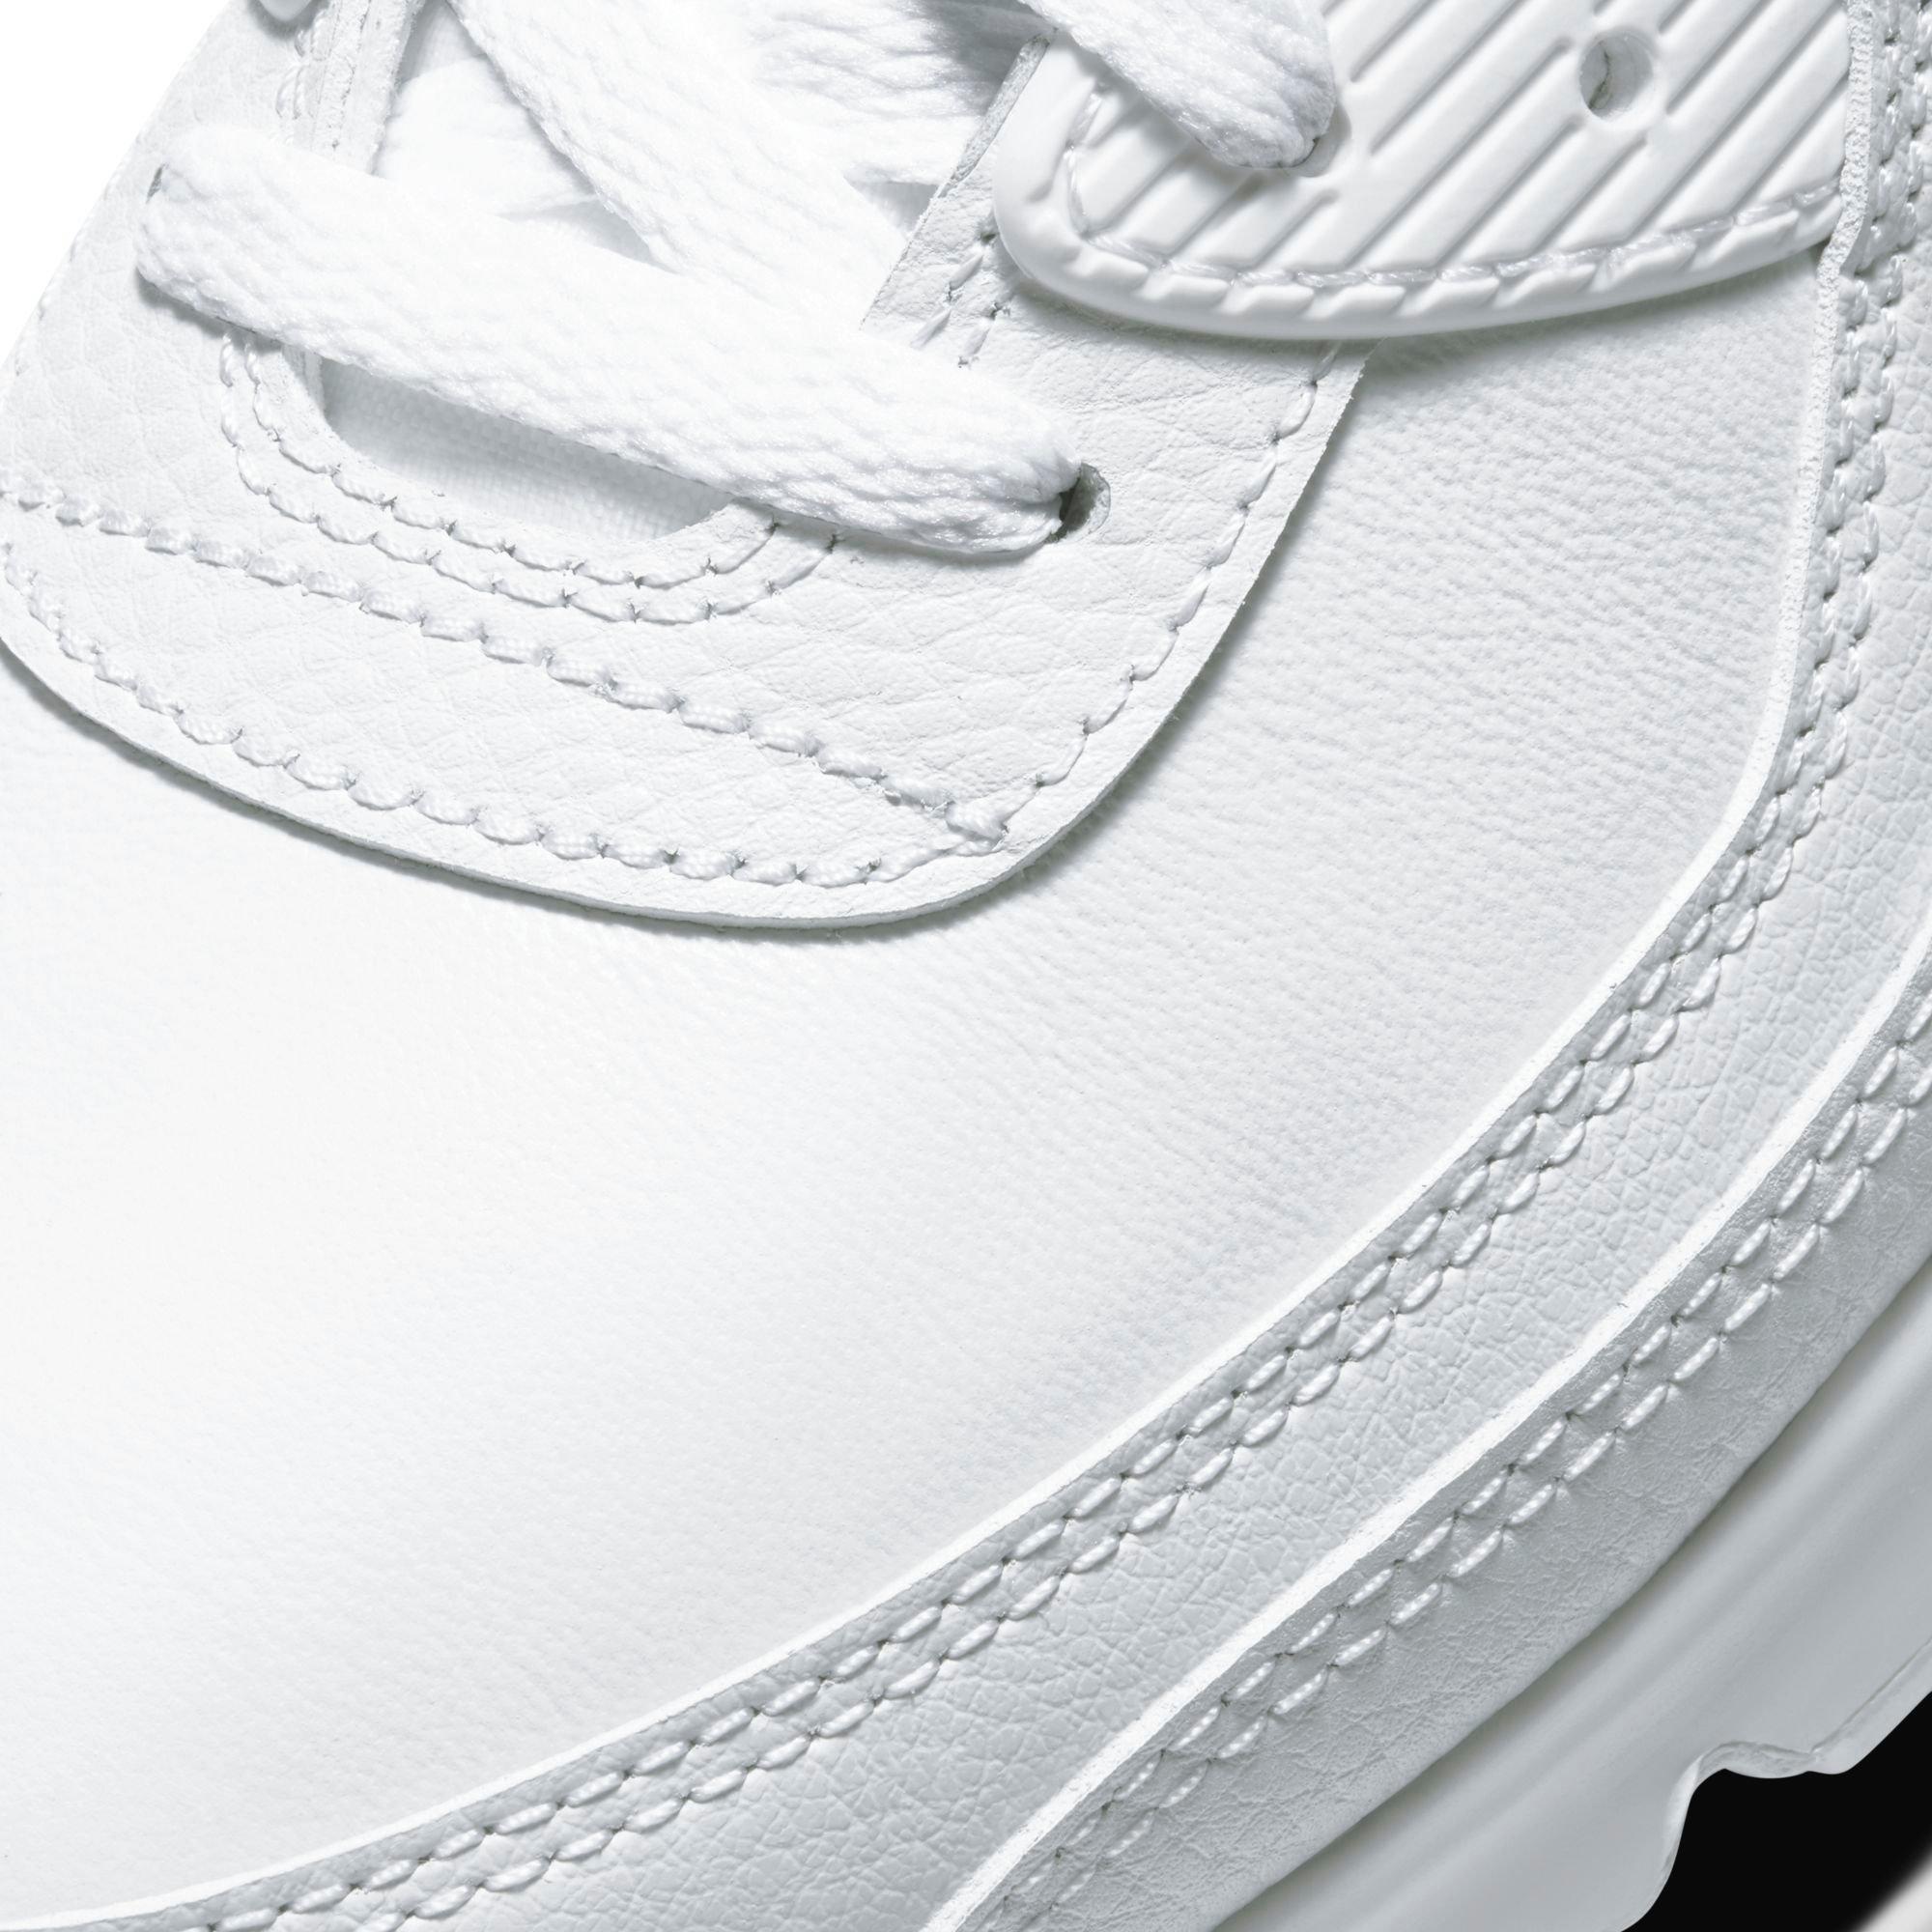 Nike Max 90 "White/White" Men's